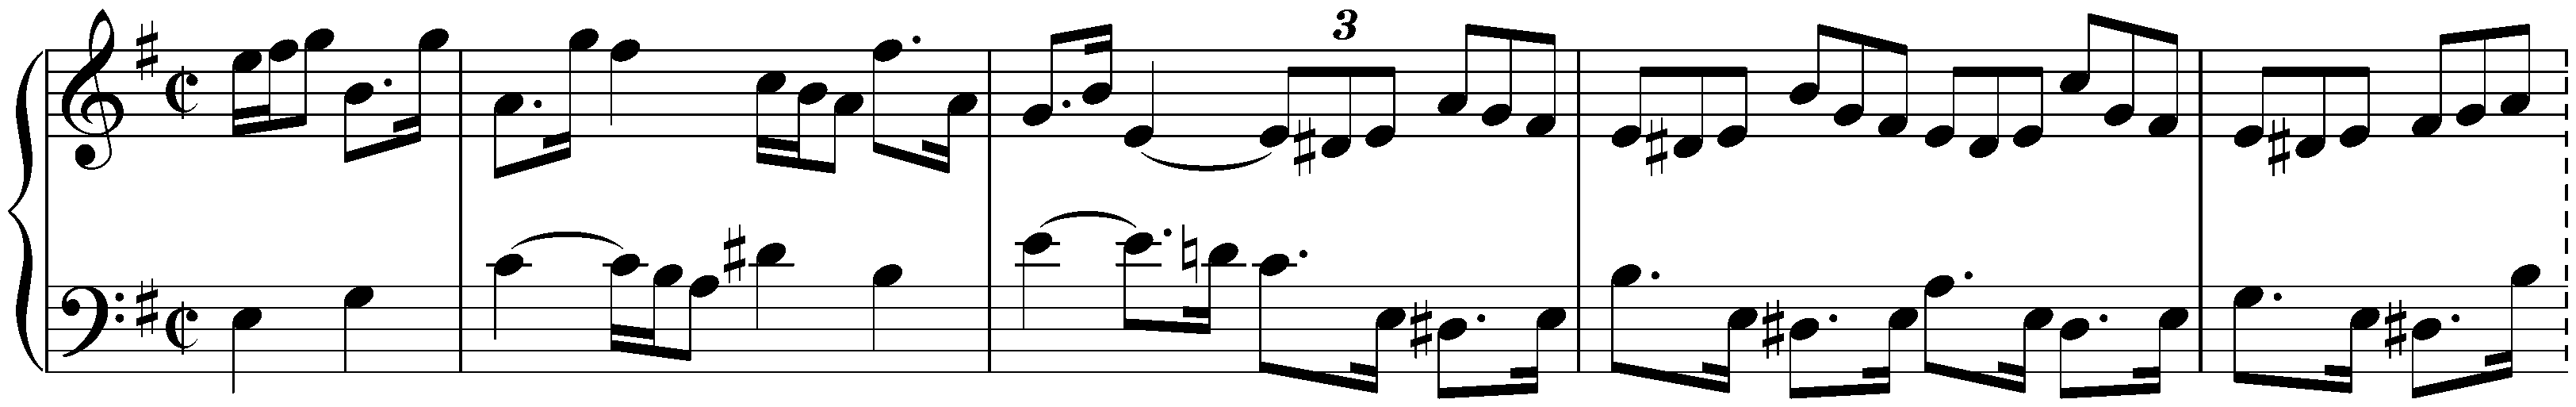 Partita no. 6 in E minor, BWV 830; 6. Tempo di Gavotta